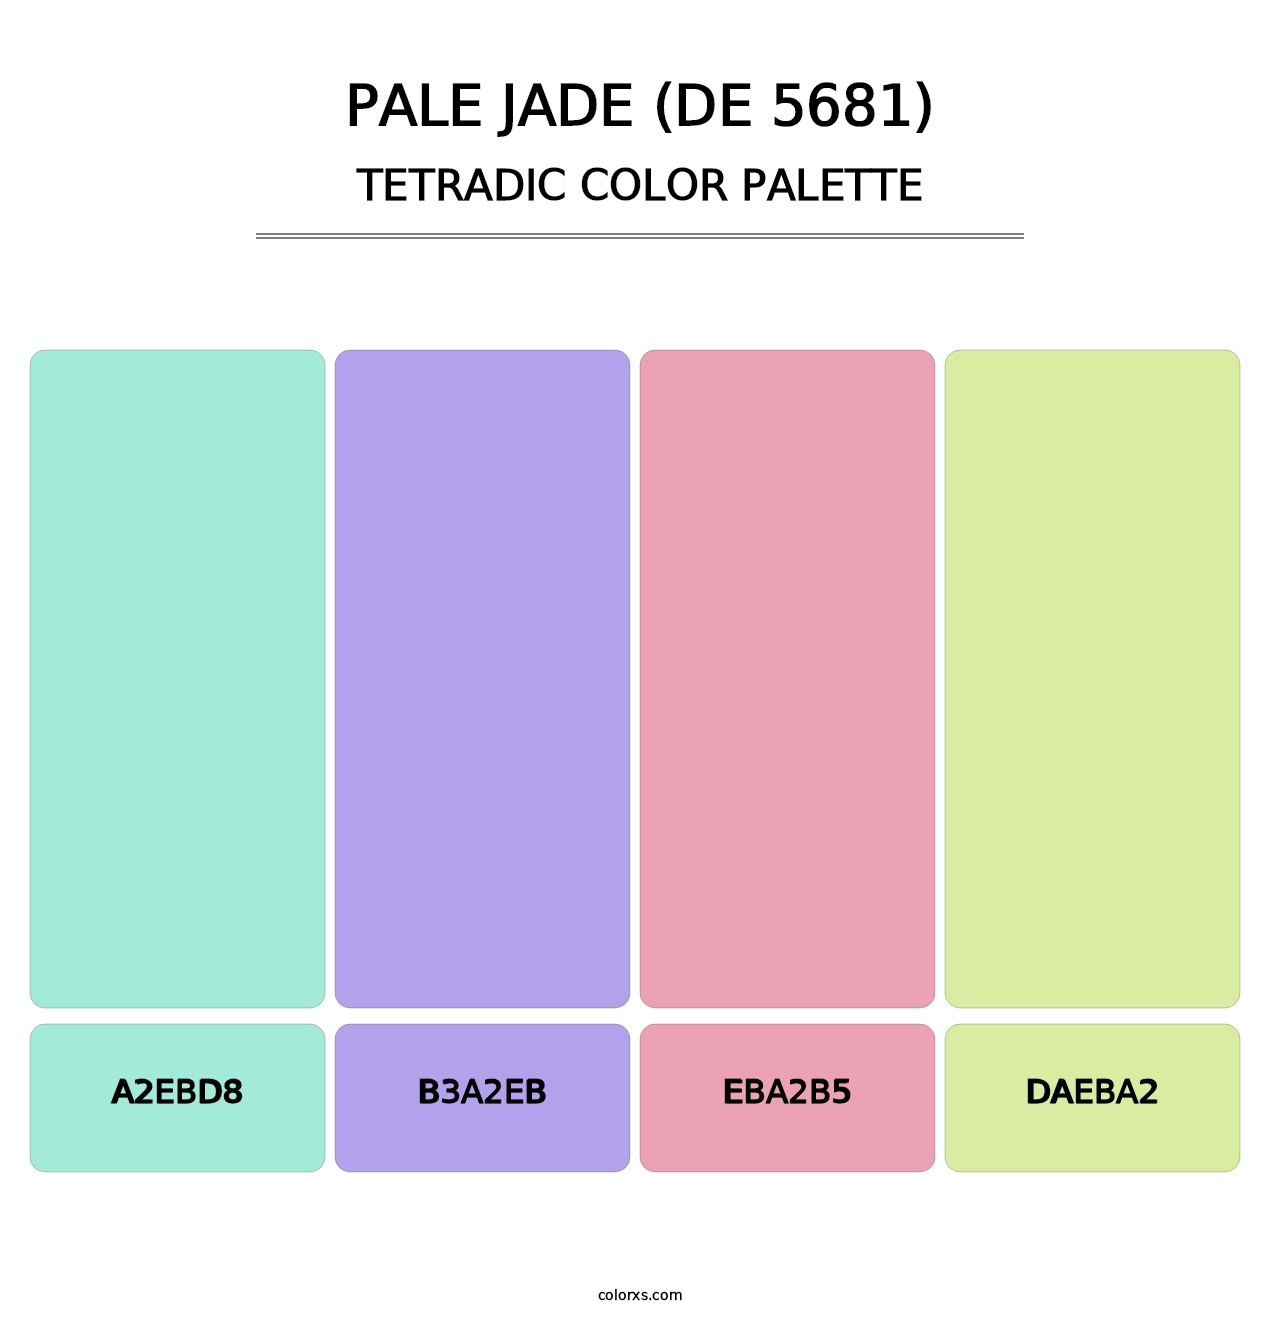 Pale Jade (DE 5681) - Tetradic Color Palette